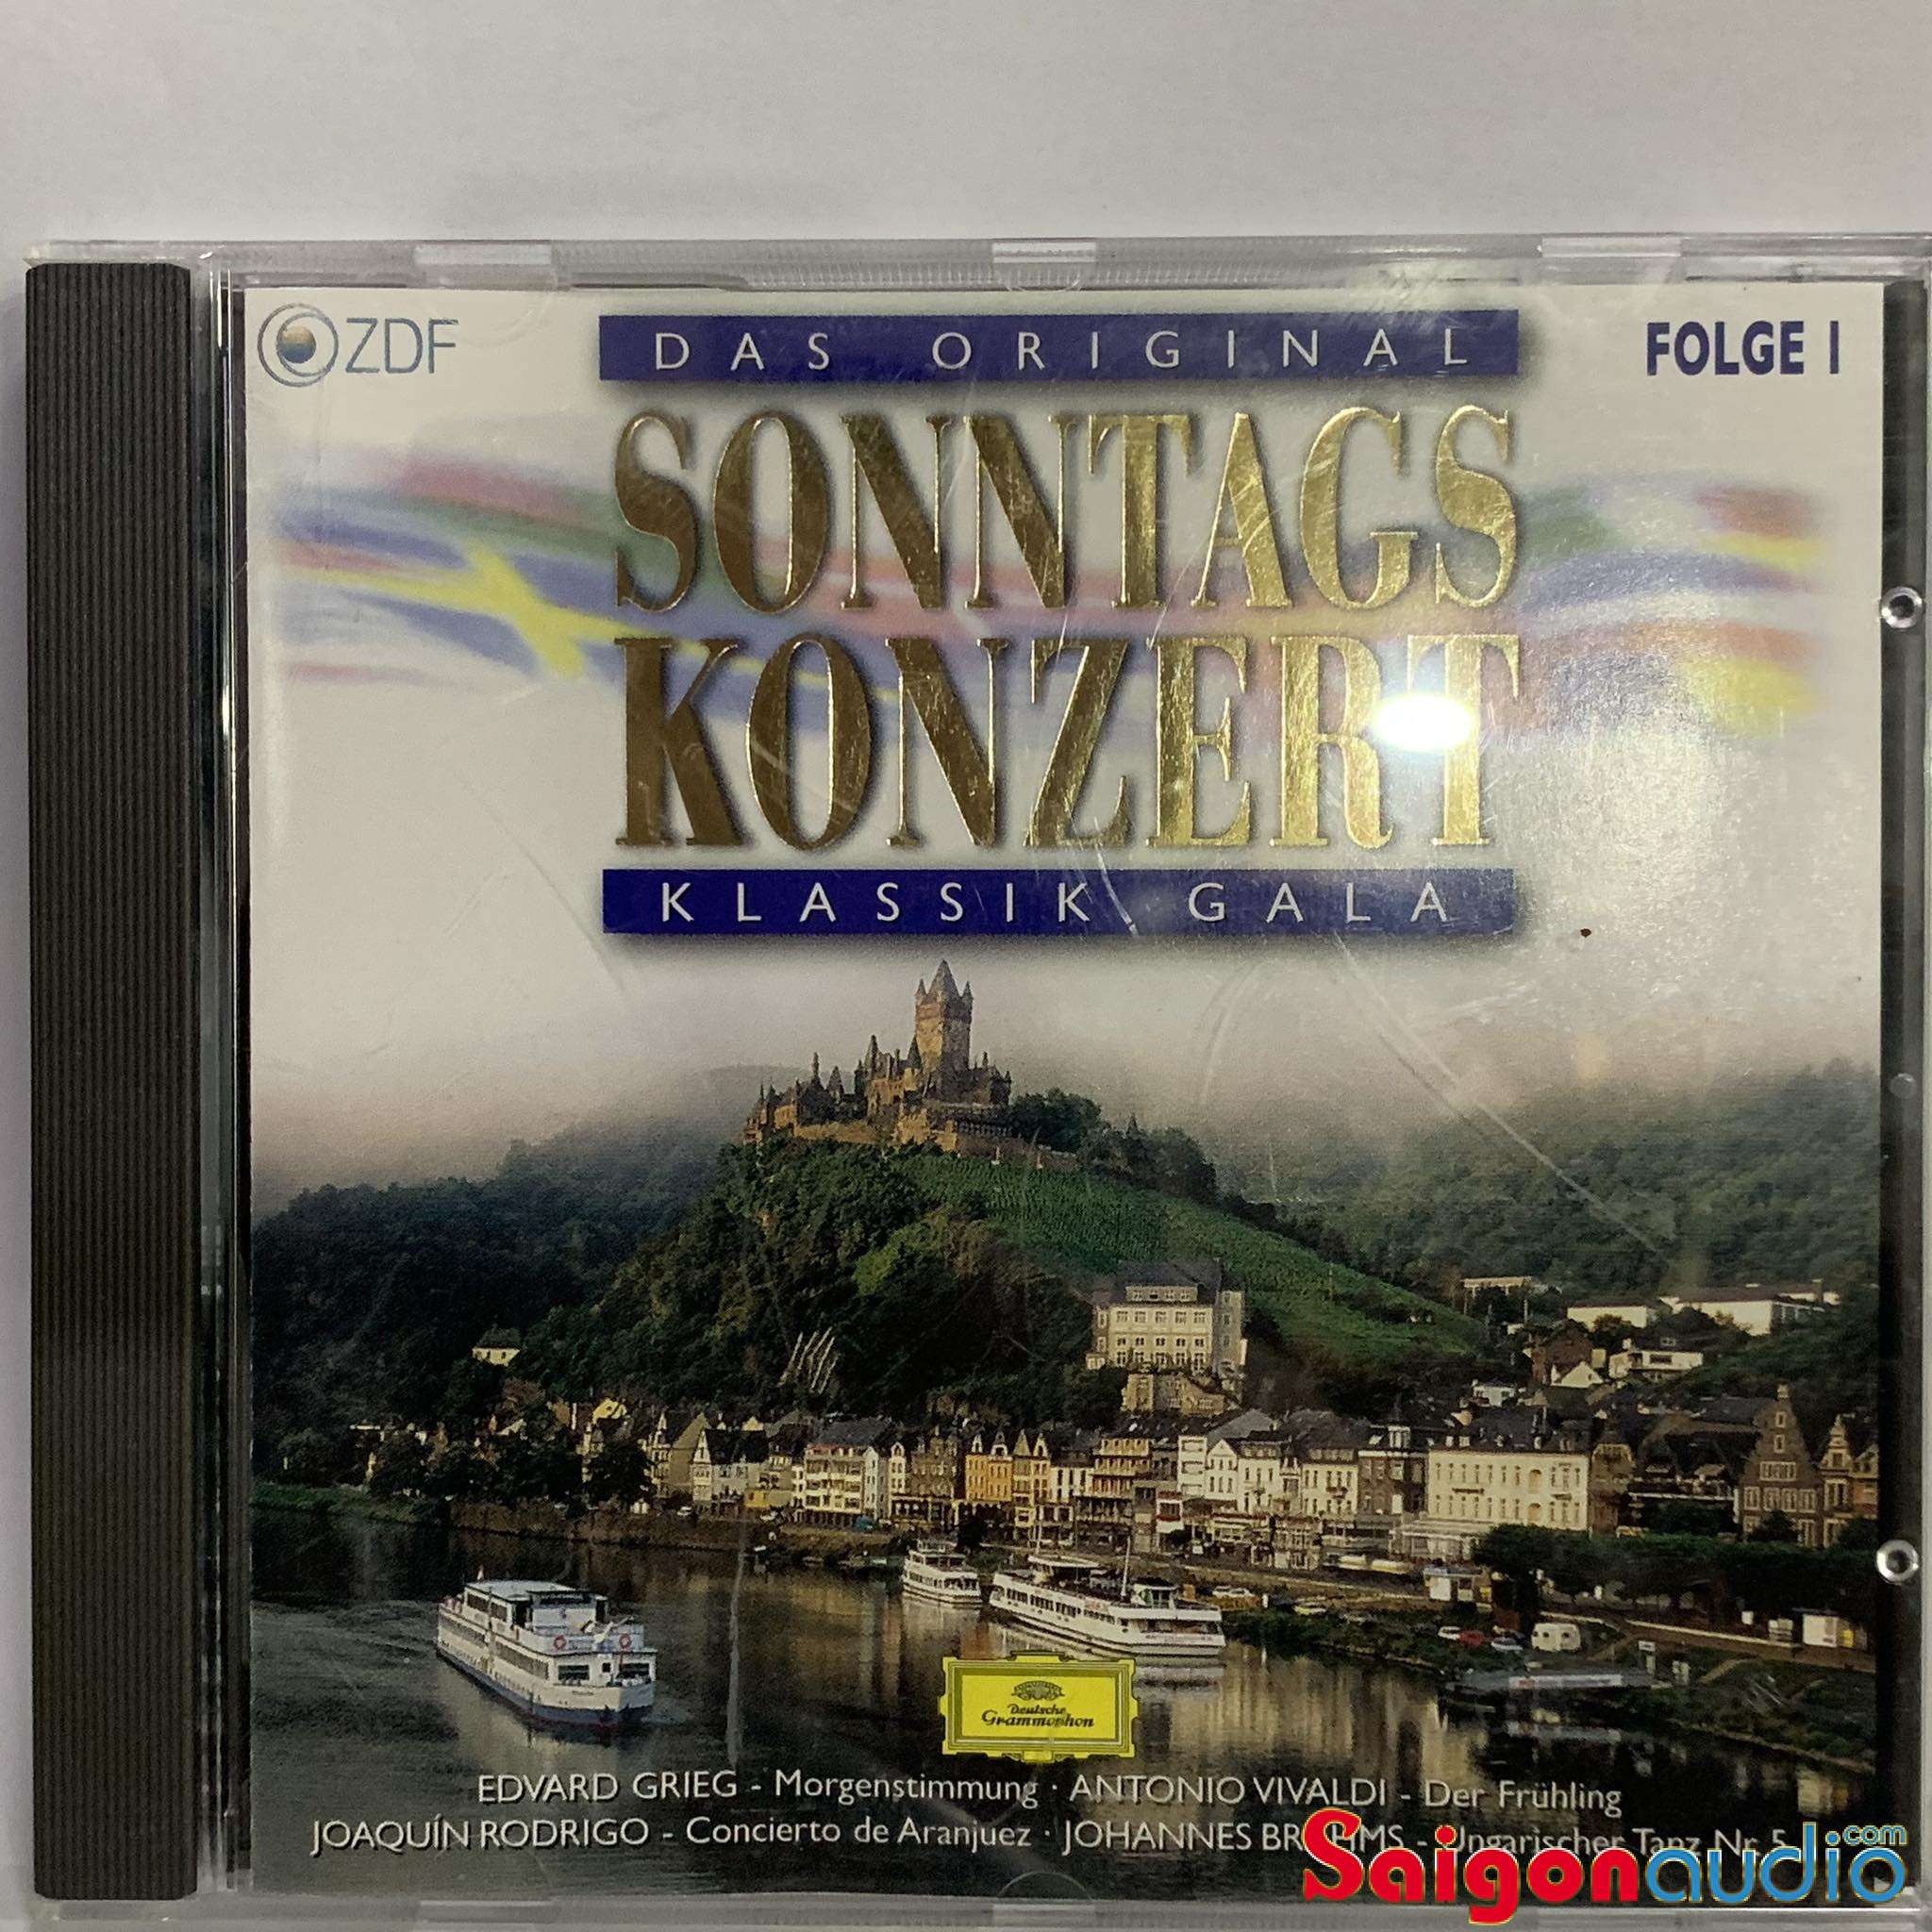 Đĩa CD gốc nhạc cổ điển Sonntags Konzert - Klassik Gala Folge 1 (Free ship khi mua 2 đĩa CD cùng hoặc khác loại)